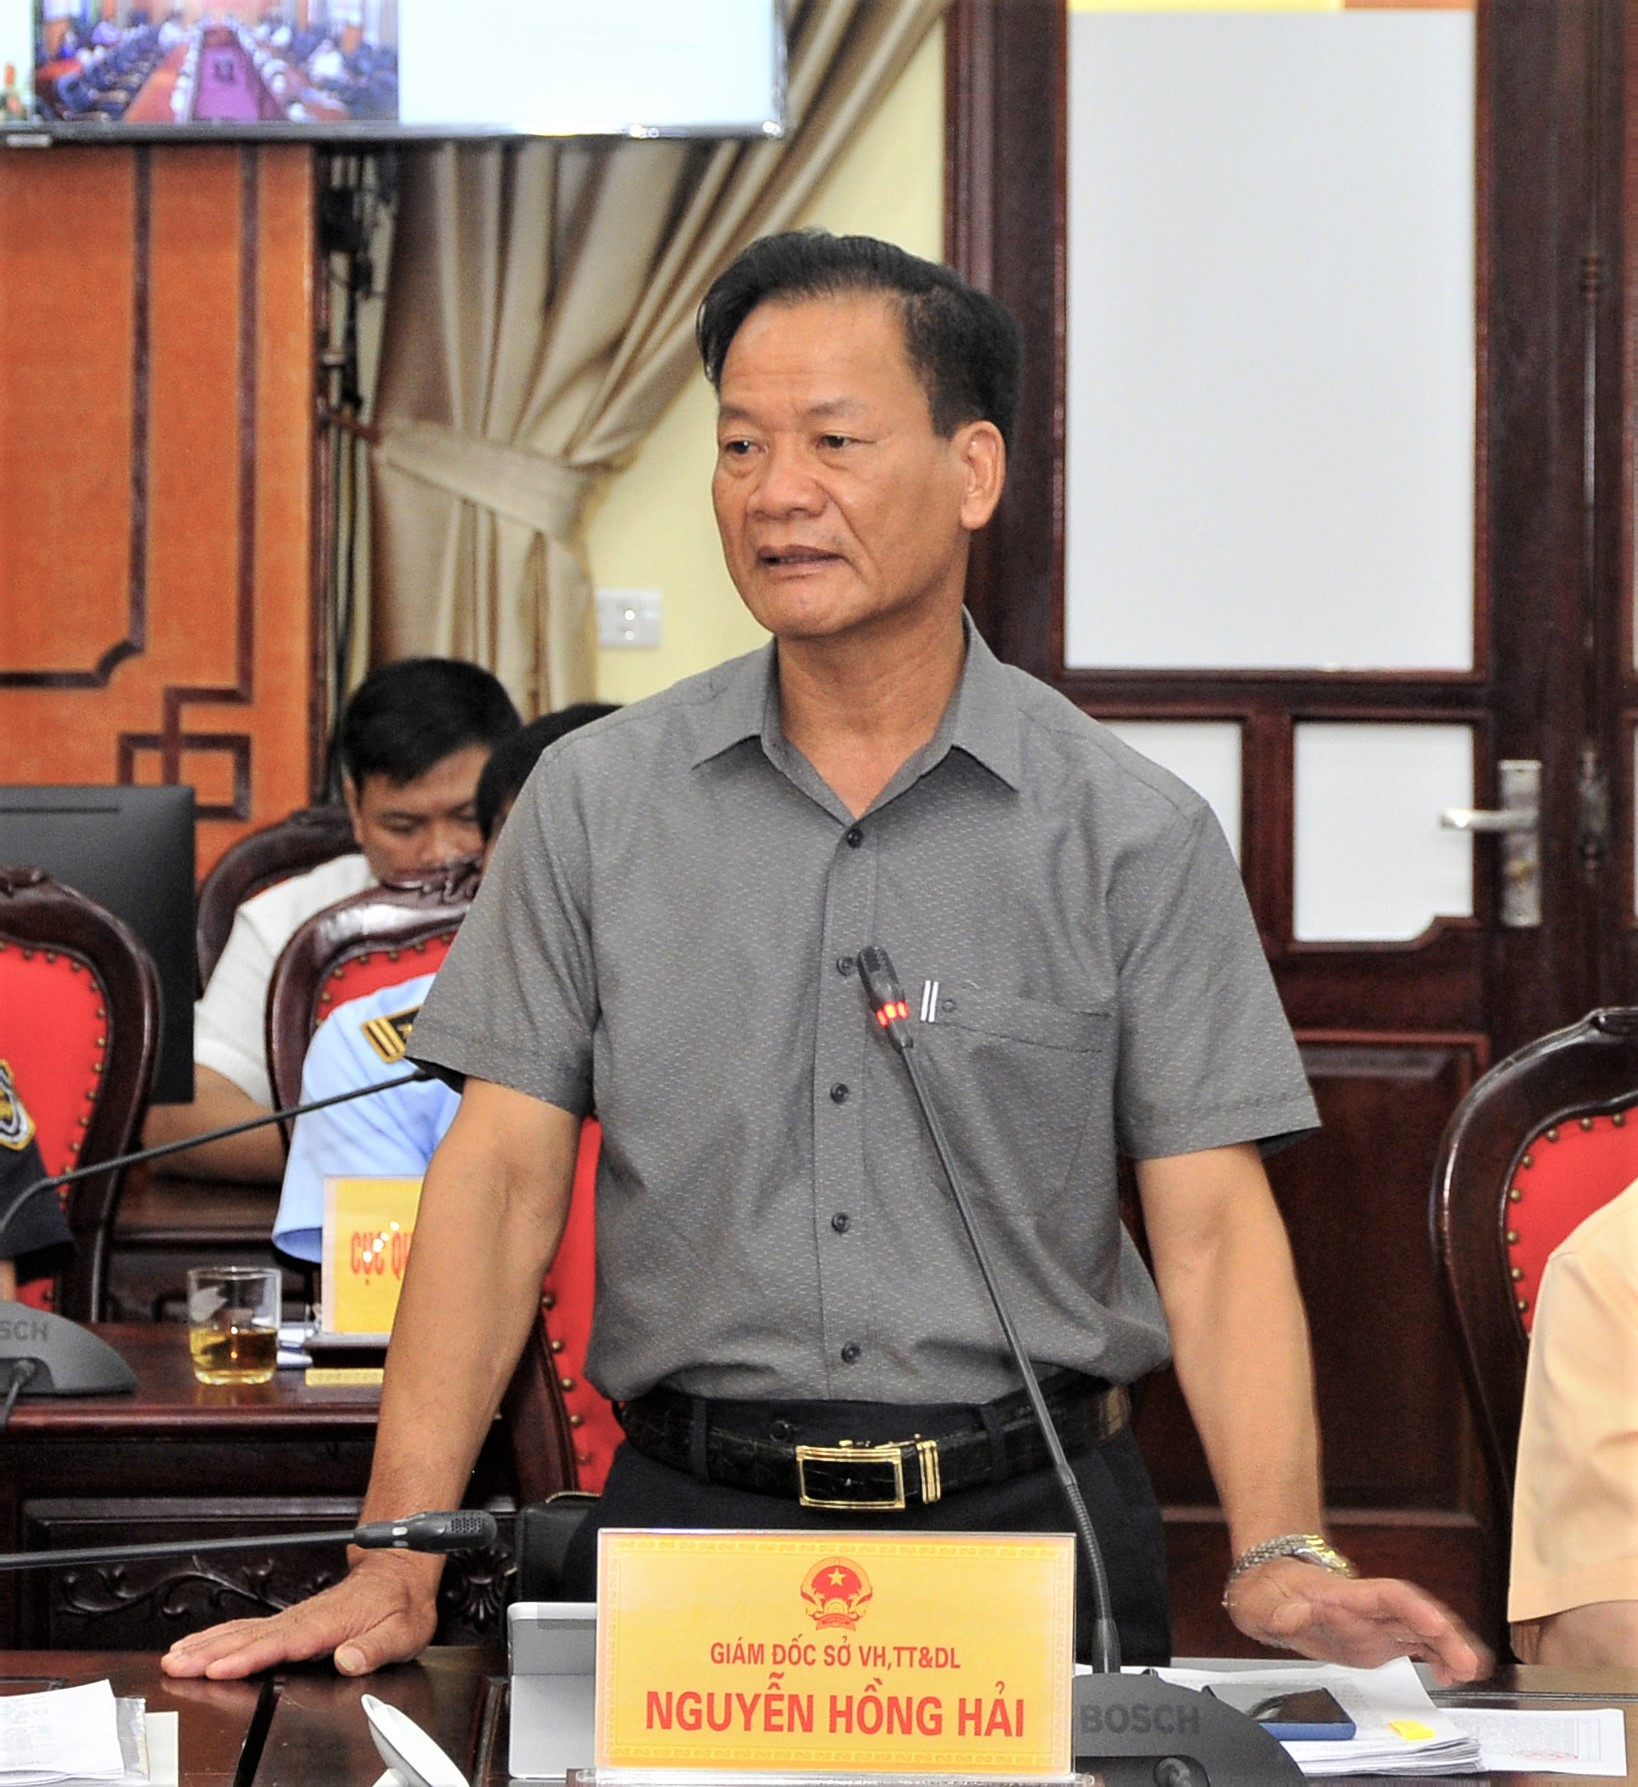 Giám đốc Sở Văn hóa TT&DL Nguyễn Hồng Hải đề nghị các huyện rà soát các điểm, làng văn hóa du lịch và tăng cường sản phẩm OCOP phục vụ du lịch.